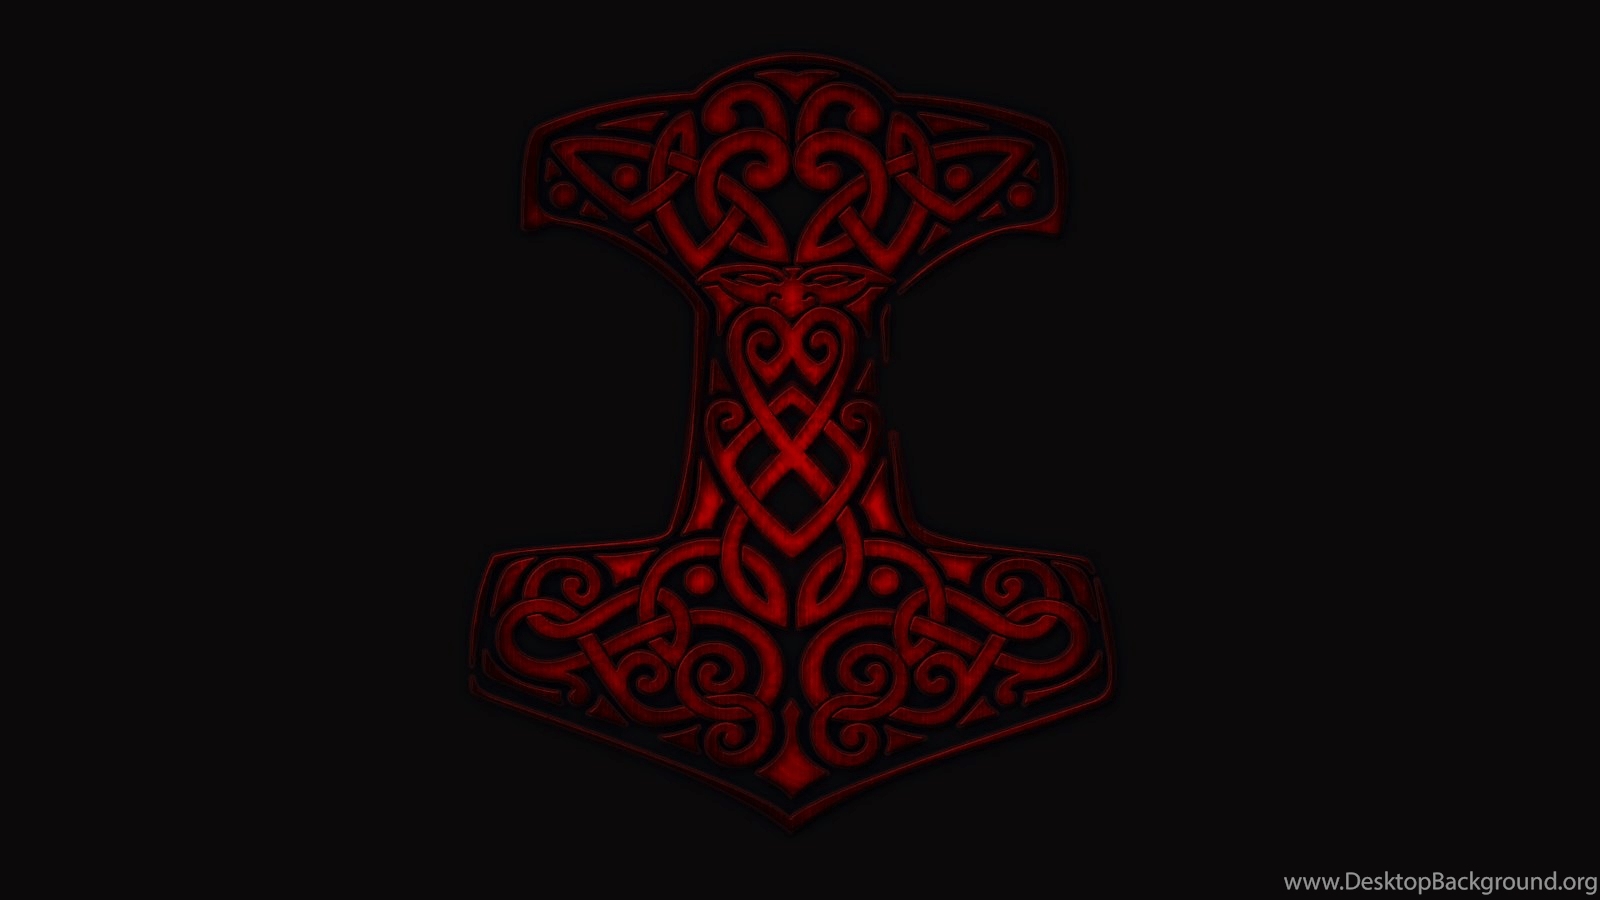 Thor's Hammer (Mjolnir) Wallpaper By Sybreeder